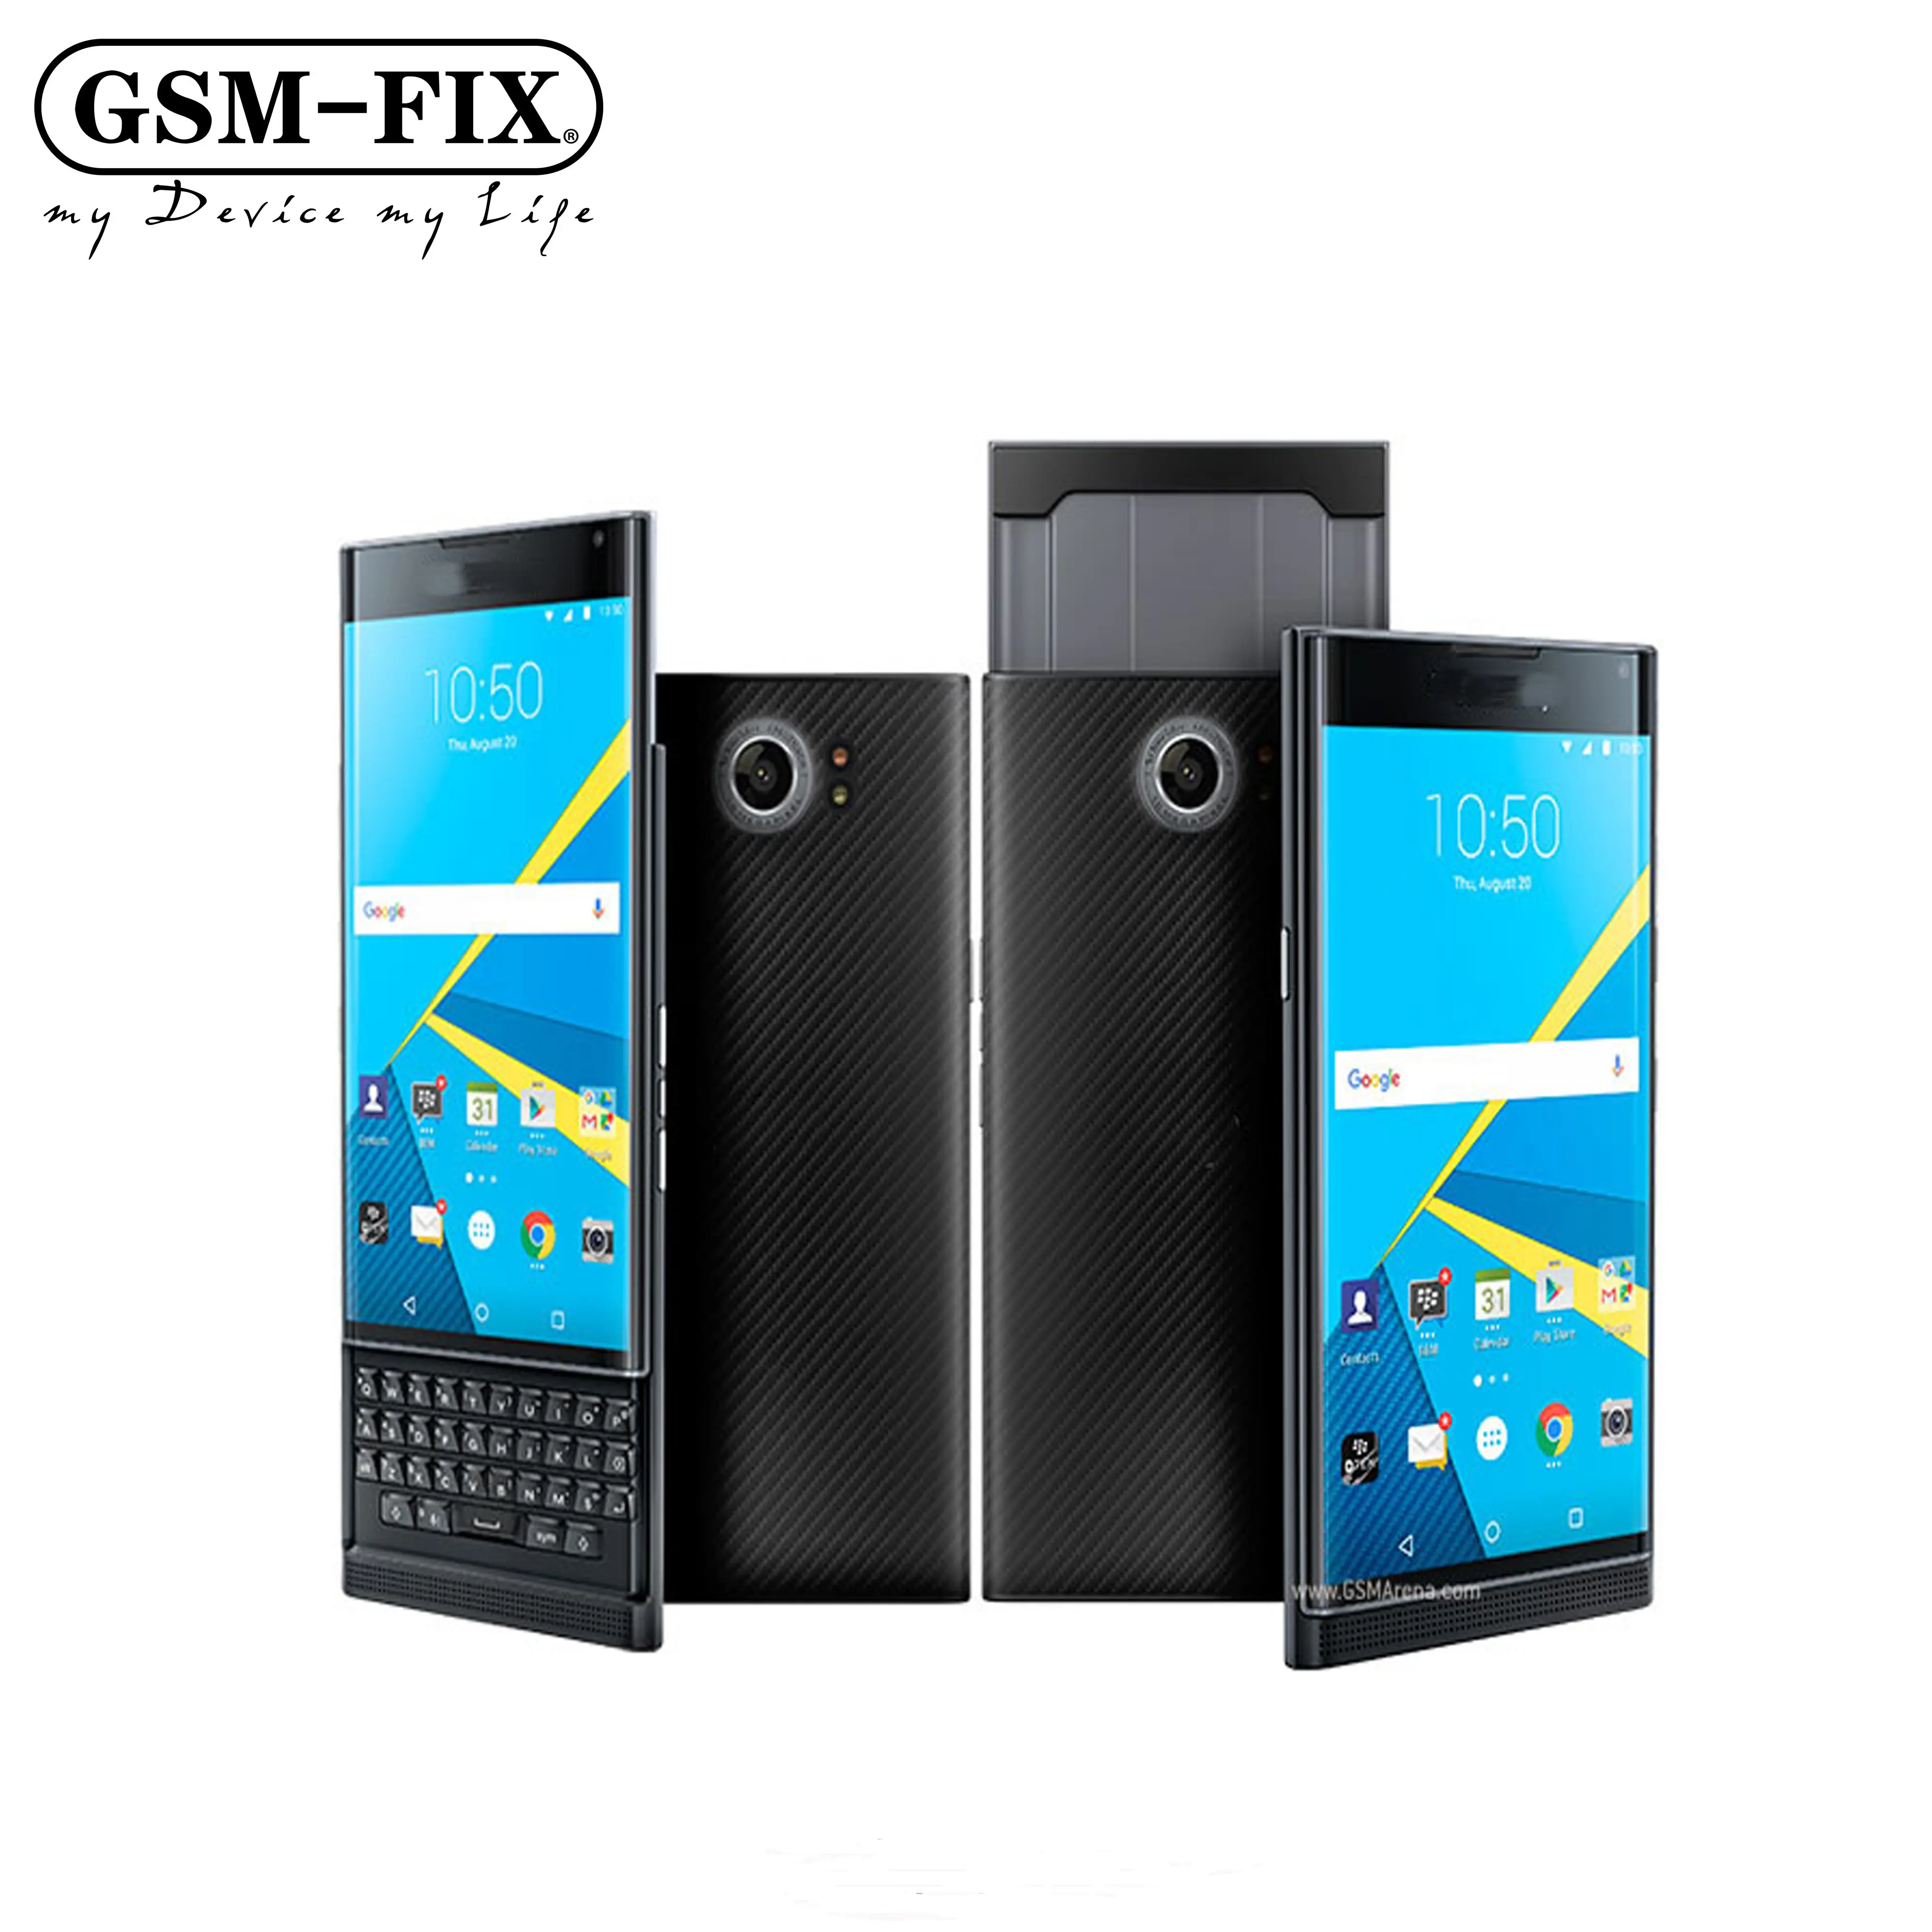 GSM-FIX разблокирована, оригинал, хит продаж GSM слайдер мобильный сотовый телефон Android смартфон сенсорного экрана для Blackberry PRIV